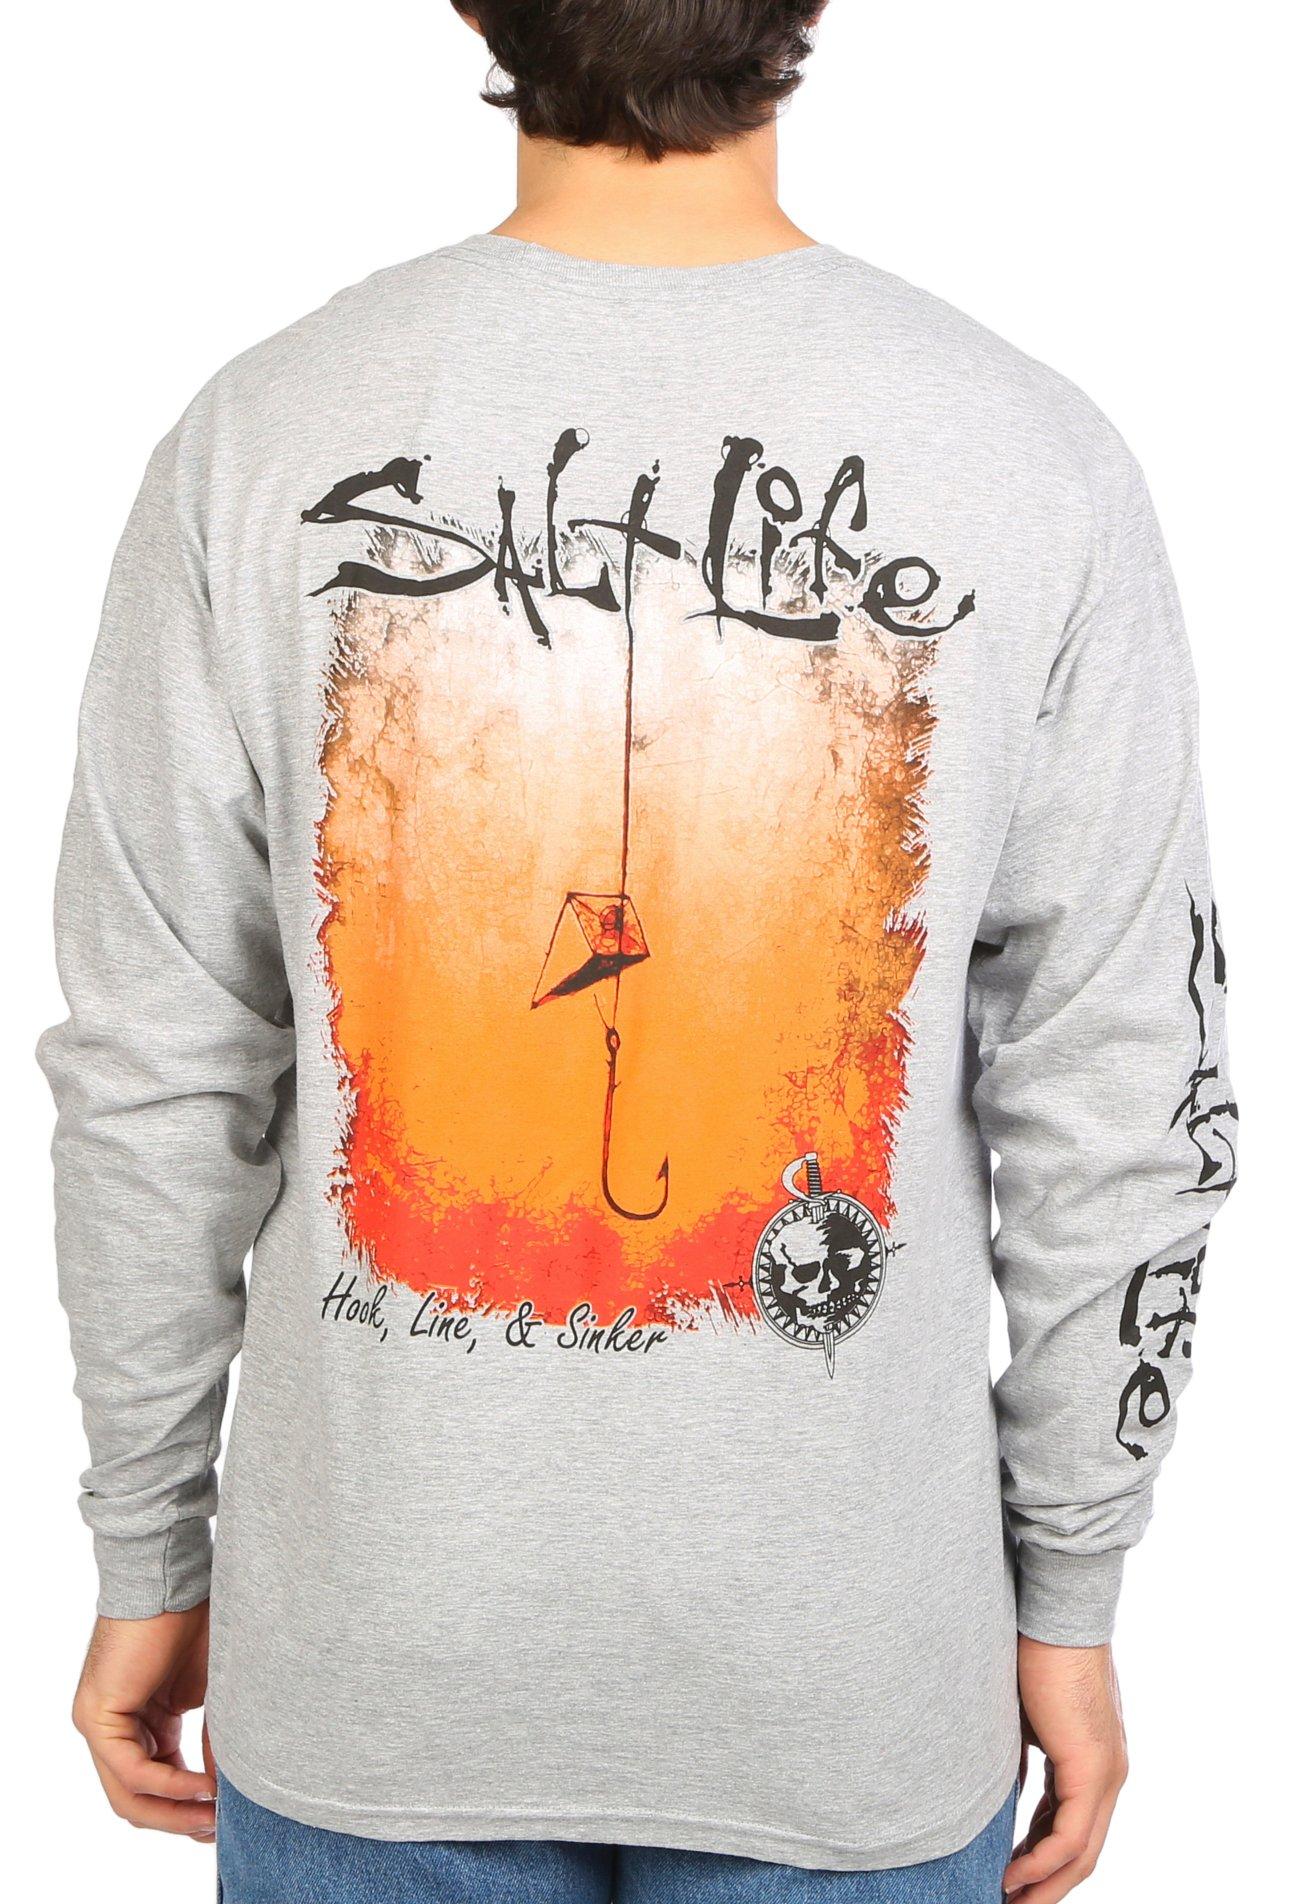 Salt Life Mens Hook, Line & Sinker Long Sleeve T-Shirt